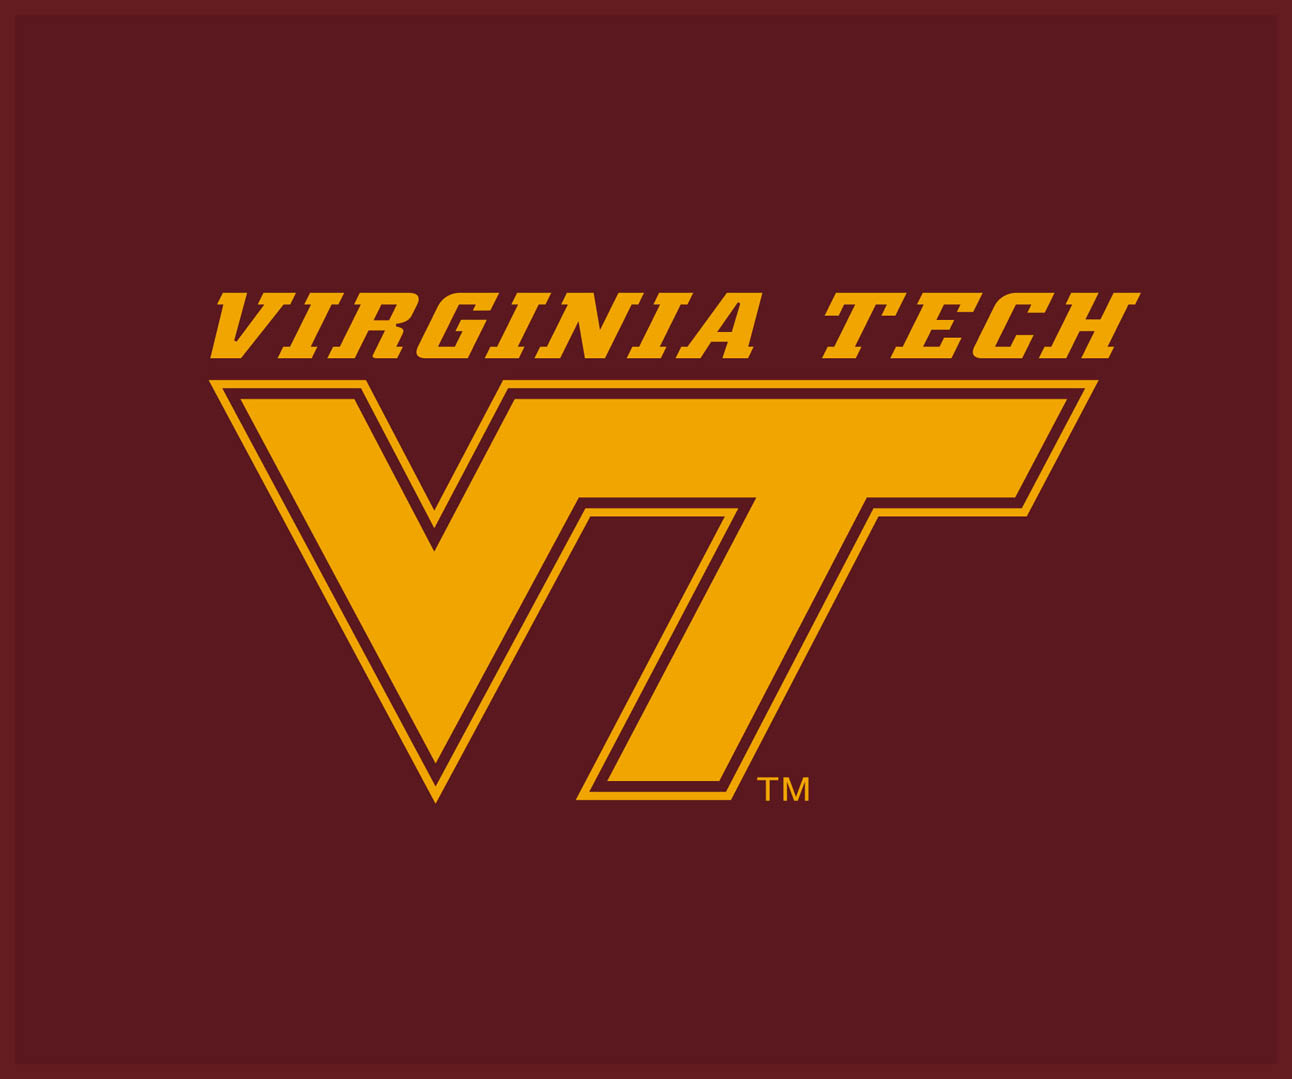 Virginia tech. 